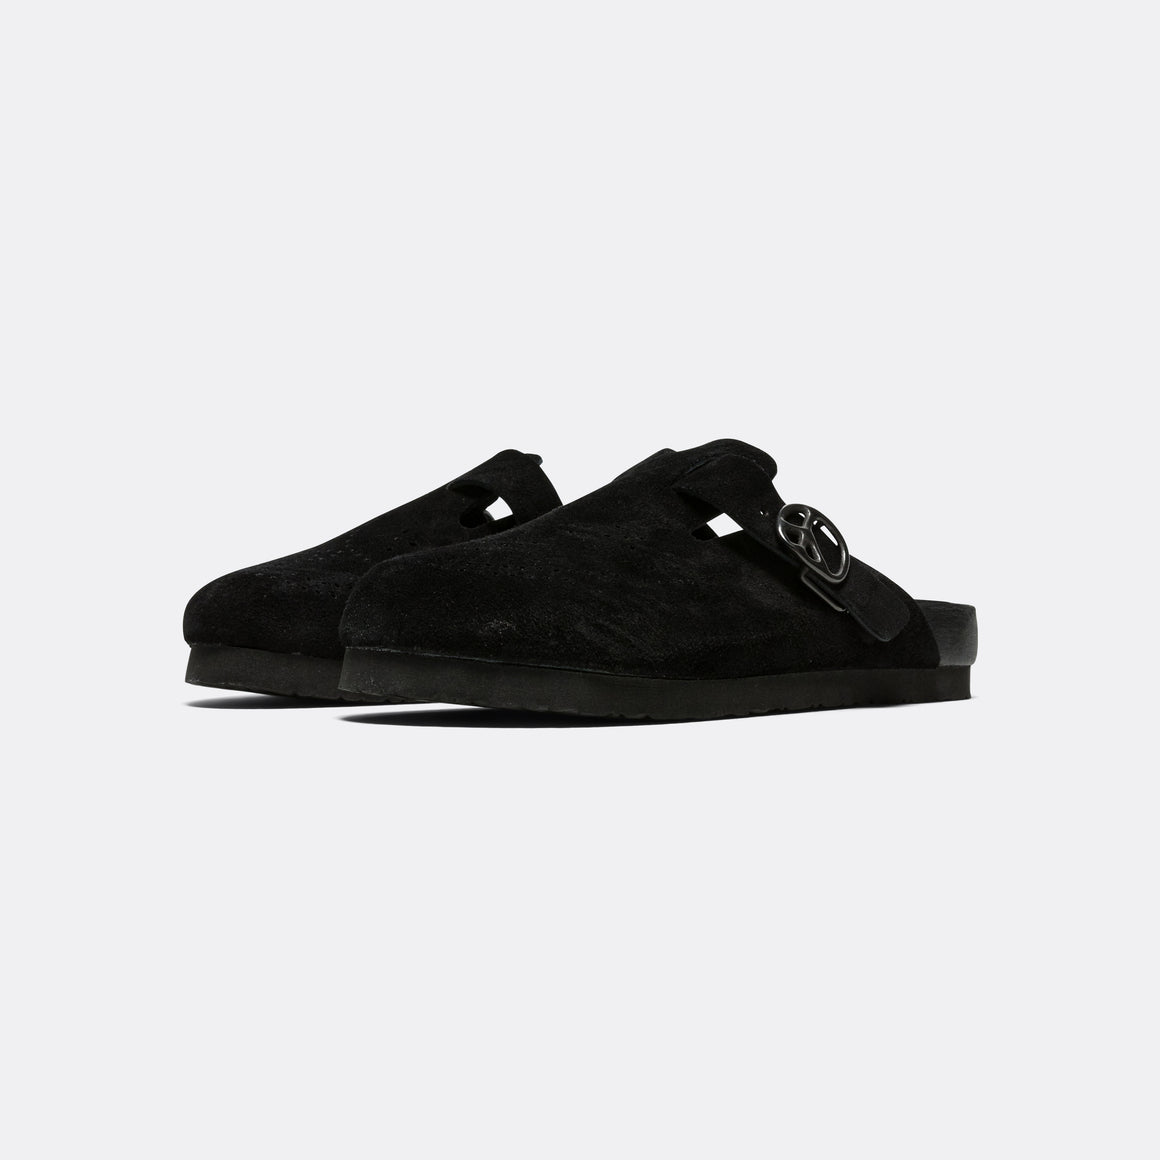 Clog Sandal - Black Suede Leather